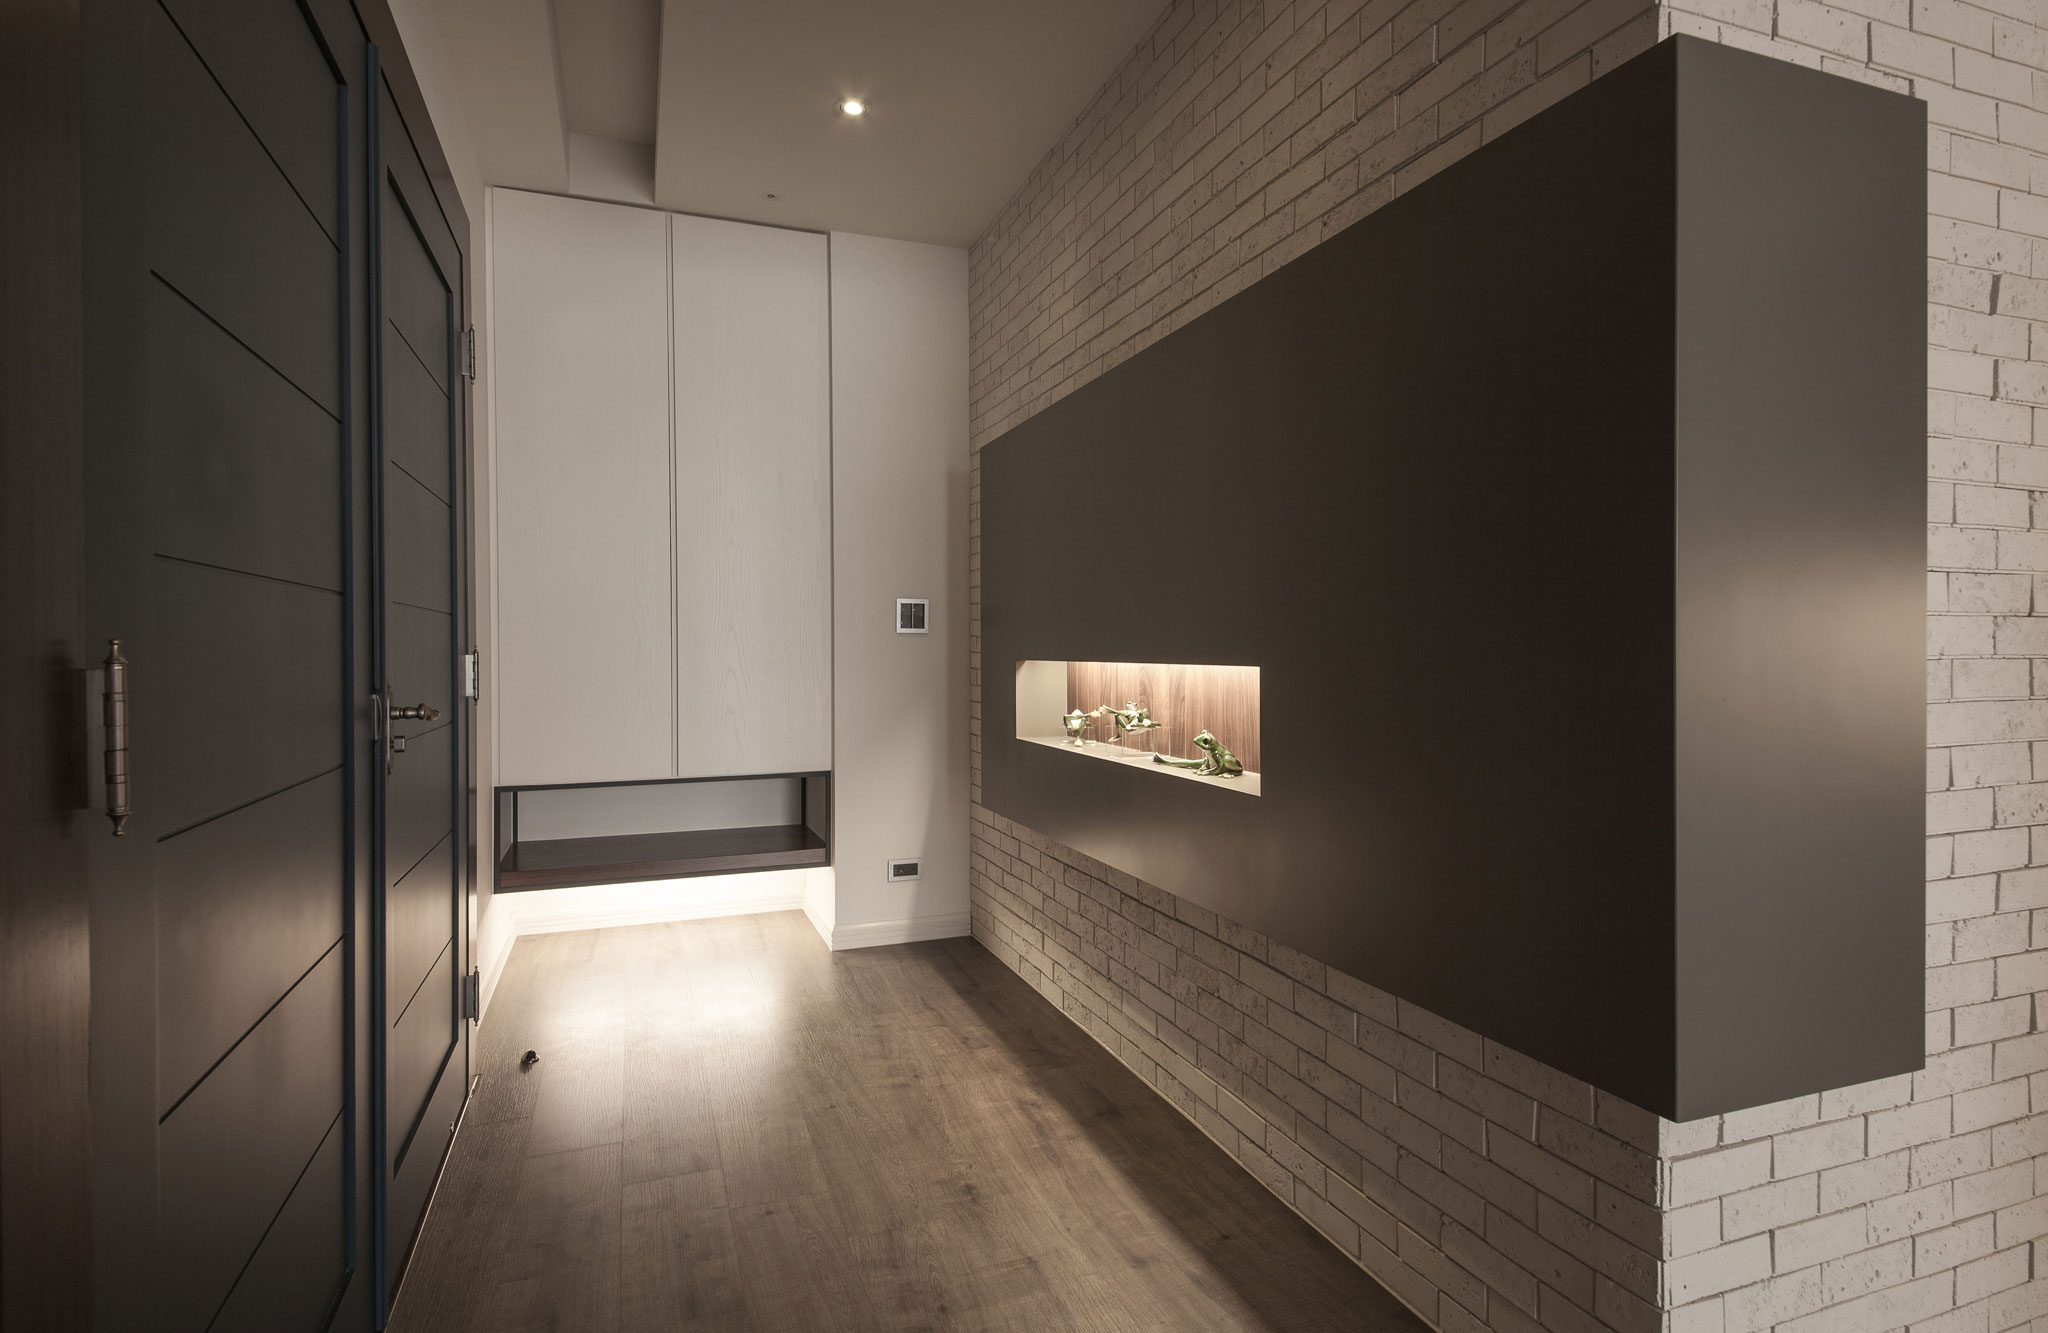 Minimalist Loft By Oliver Interior Design Homedezen